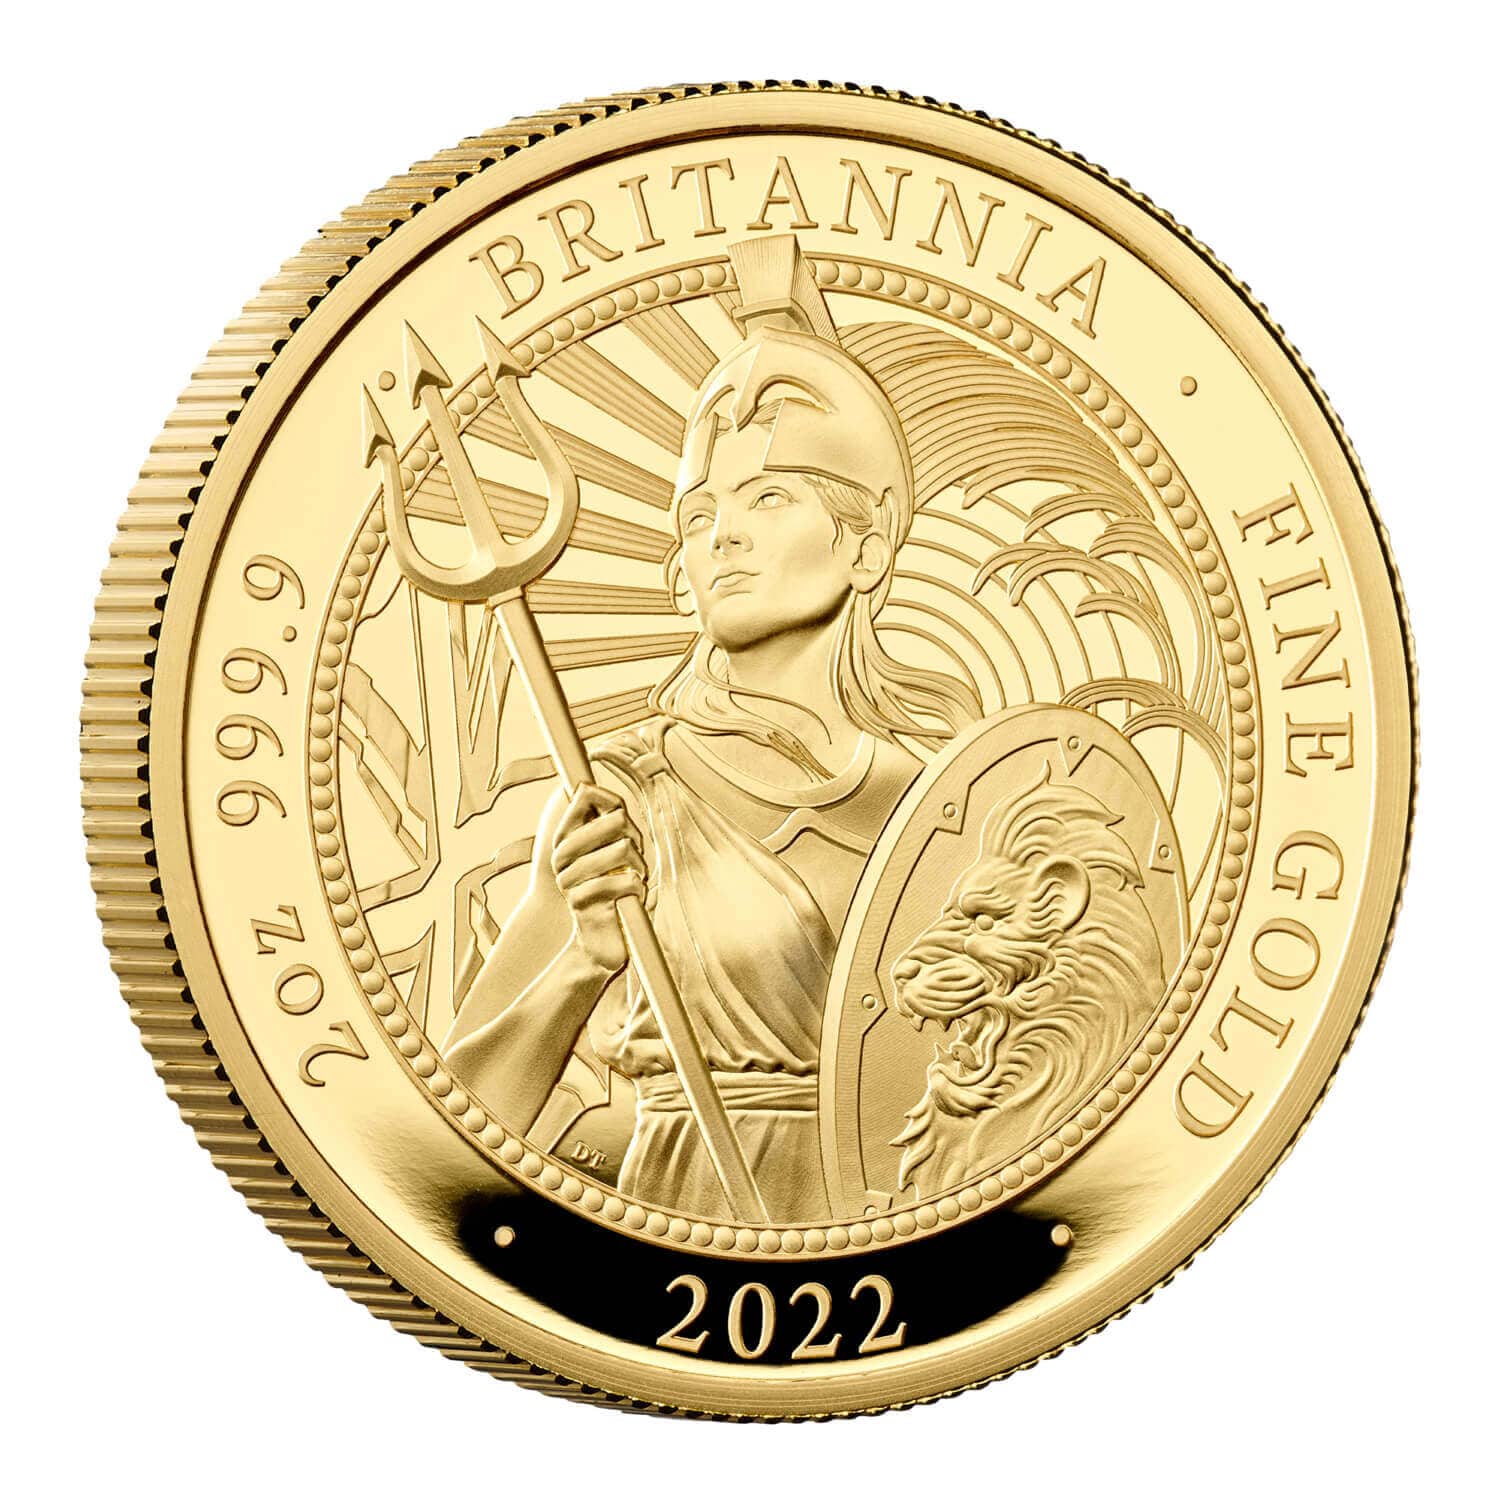 登場大人気アイテム 即納 2022 28.28グラム イギリス ツタンカーメン王の墓発見100周年記念 白銅貨 銅 ニッケル合金 5ポンド 